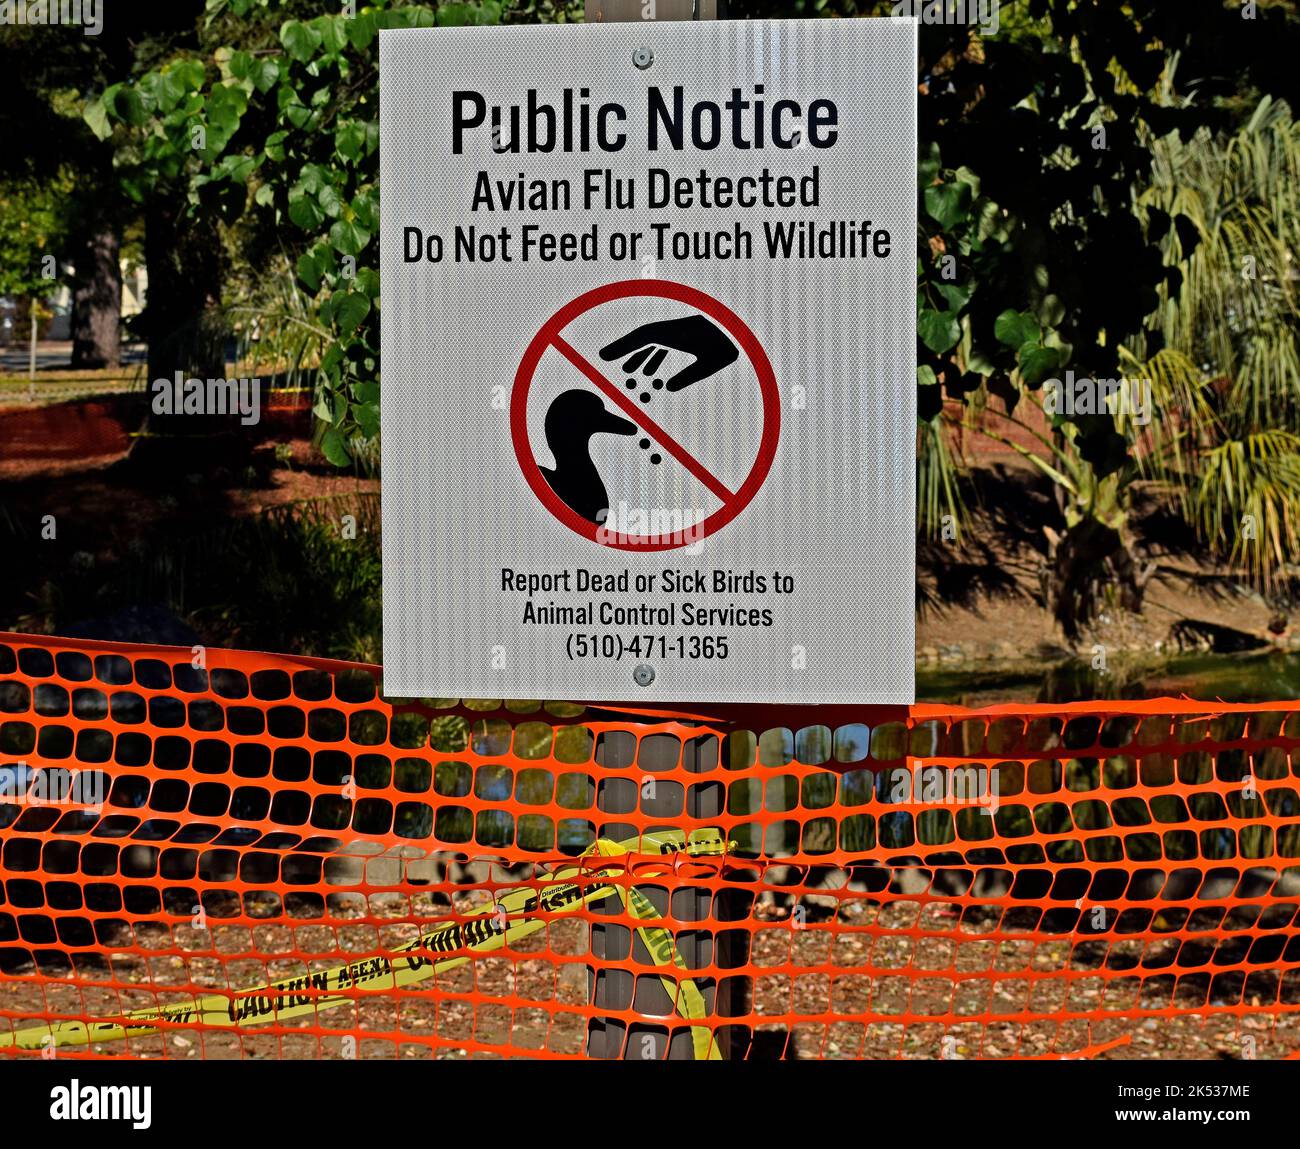 park Teich mit Wasservögeln eingezäunt in Union City, Kalifornien und Vogelgrippe erkannt Füttern oder berühren Wildtiere nicht öffentlichen Hinweisschild, melden Sie tote oder kranke Vögel an Animal Control Services Stockfoto